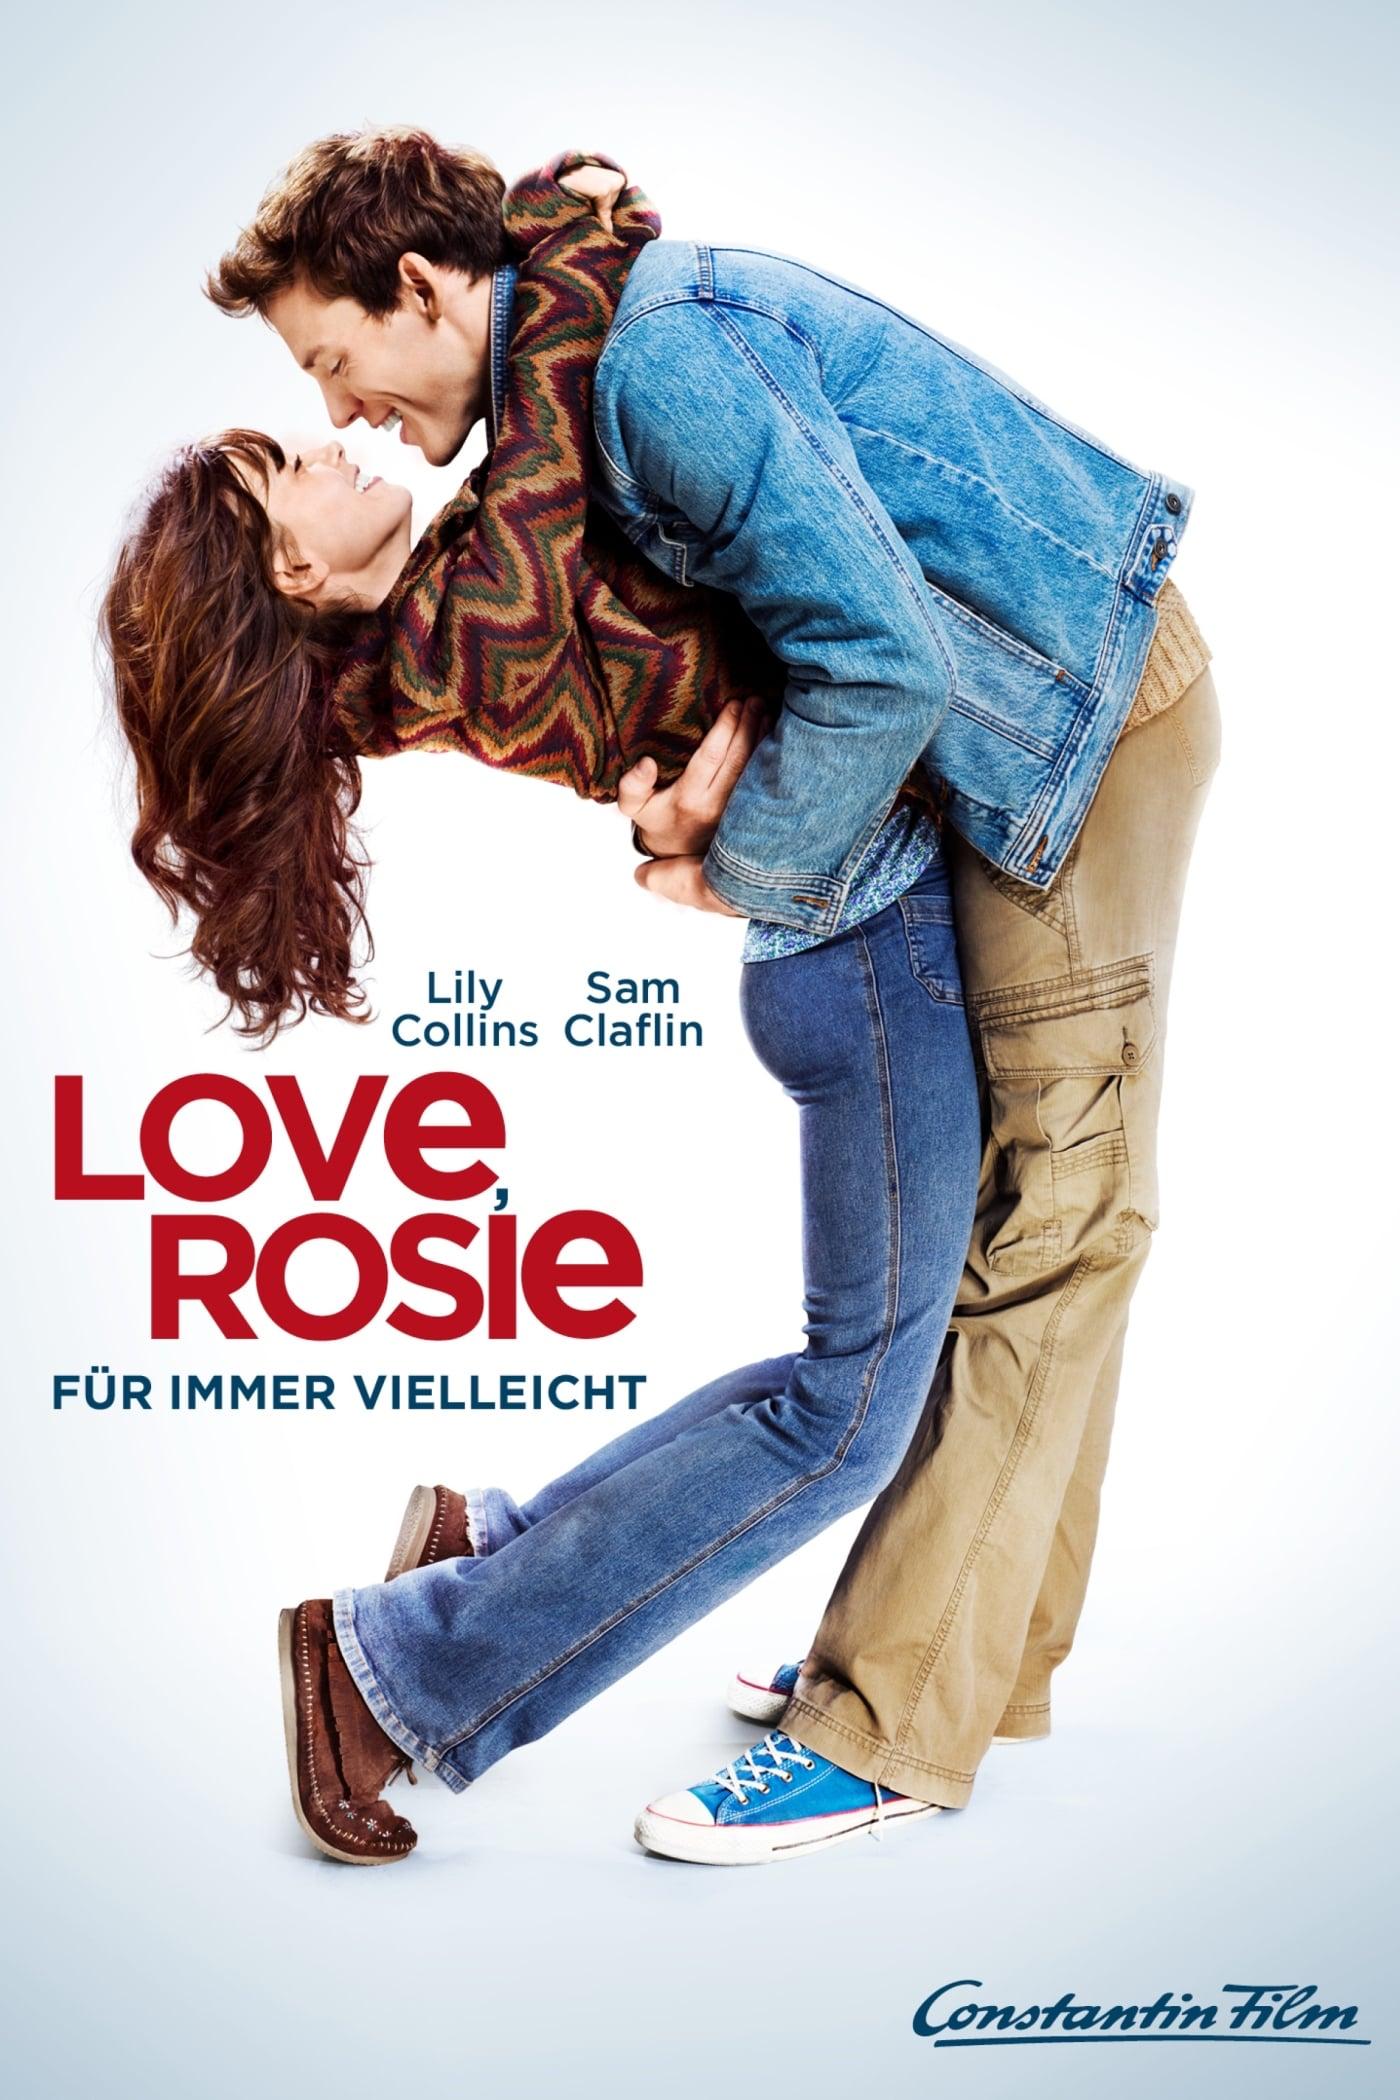 Love, Rosie - Für immer vielleicht poster